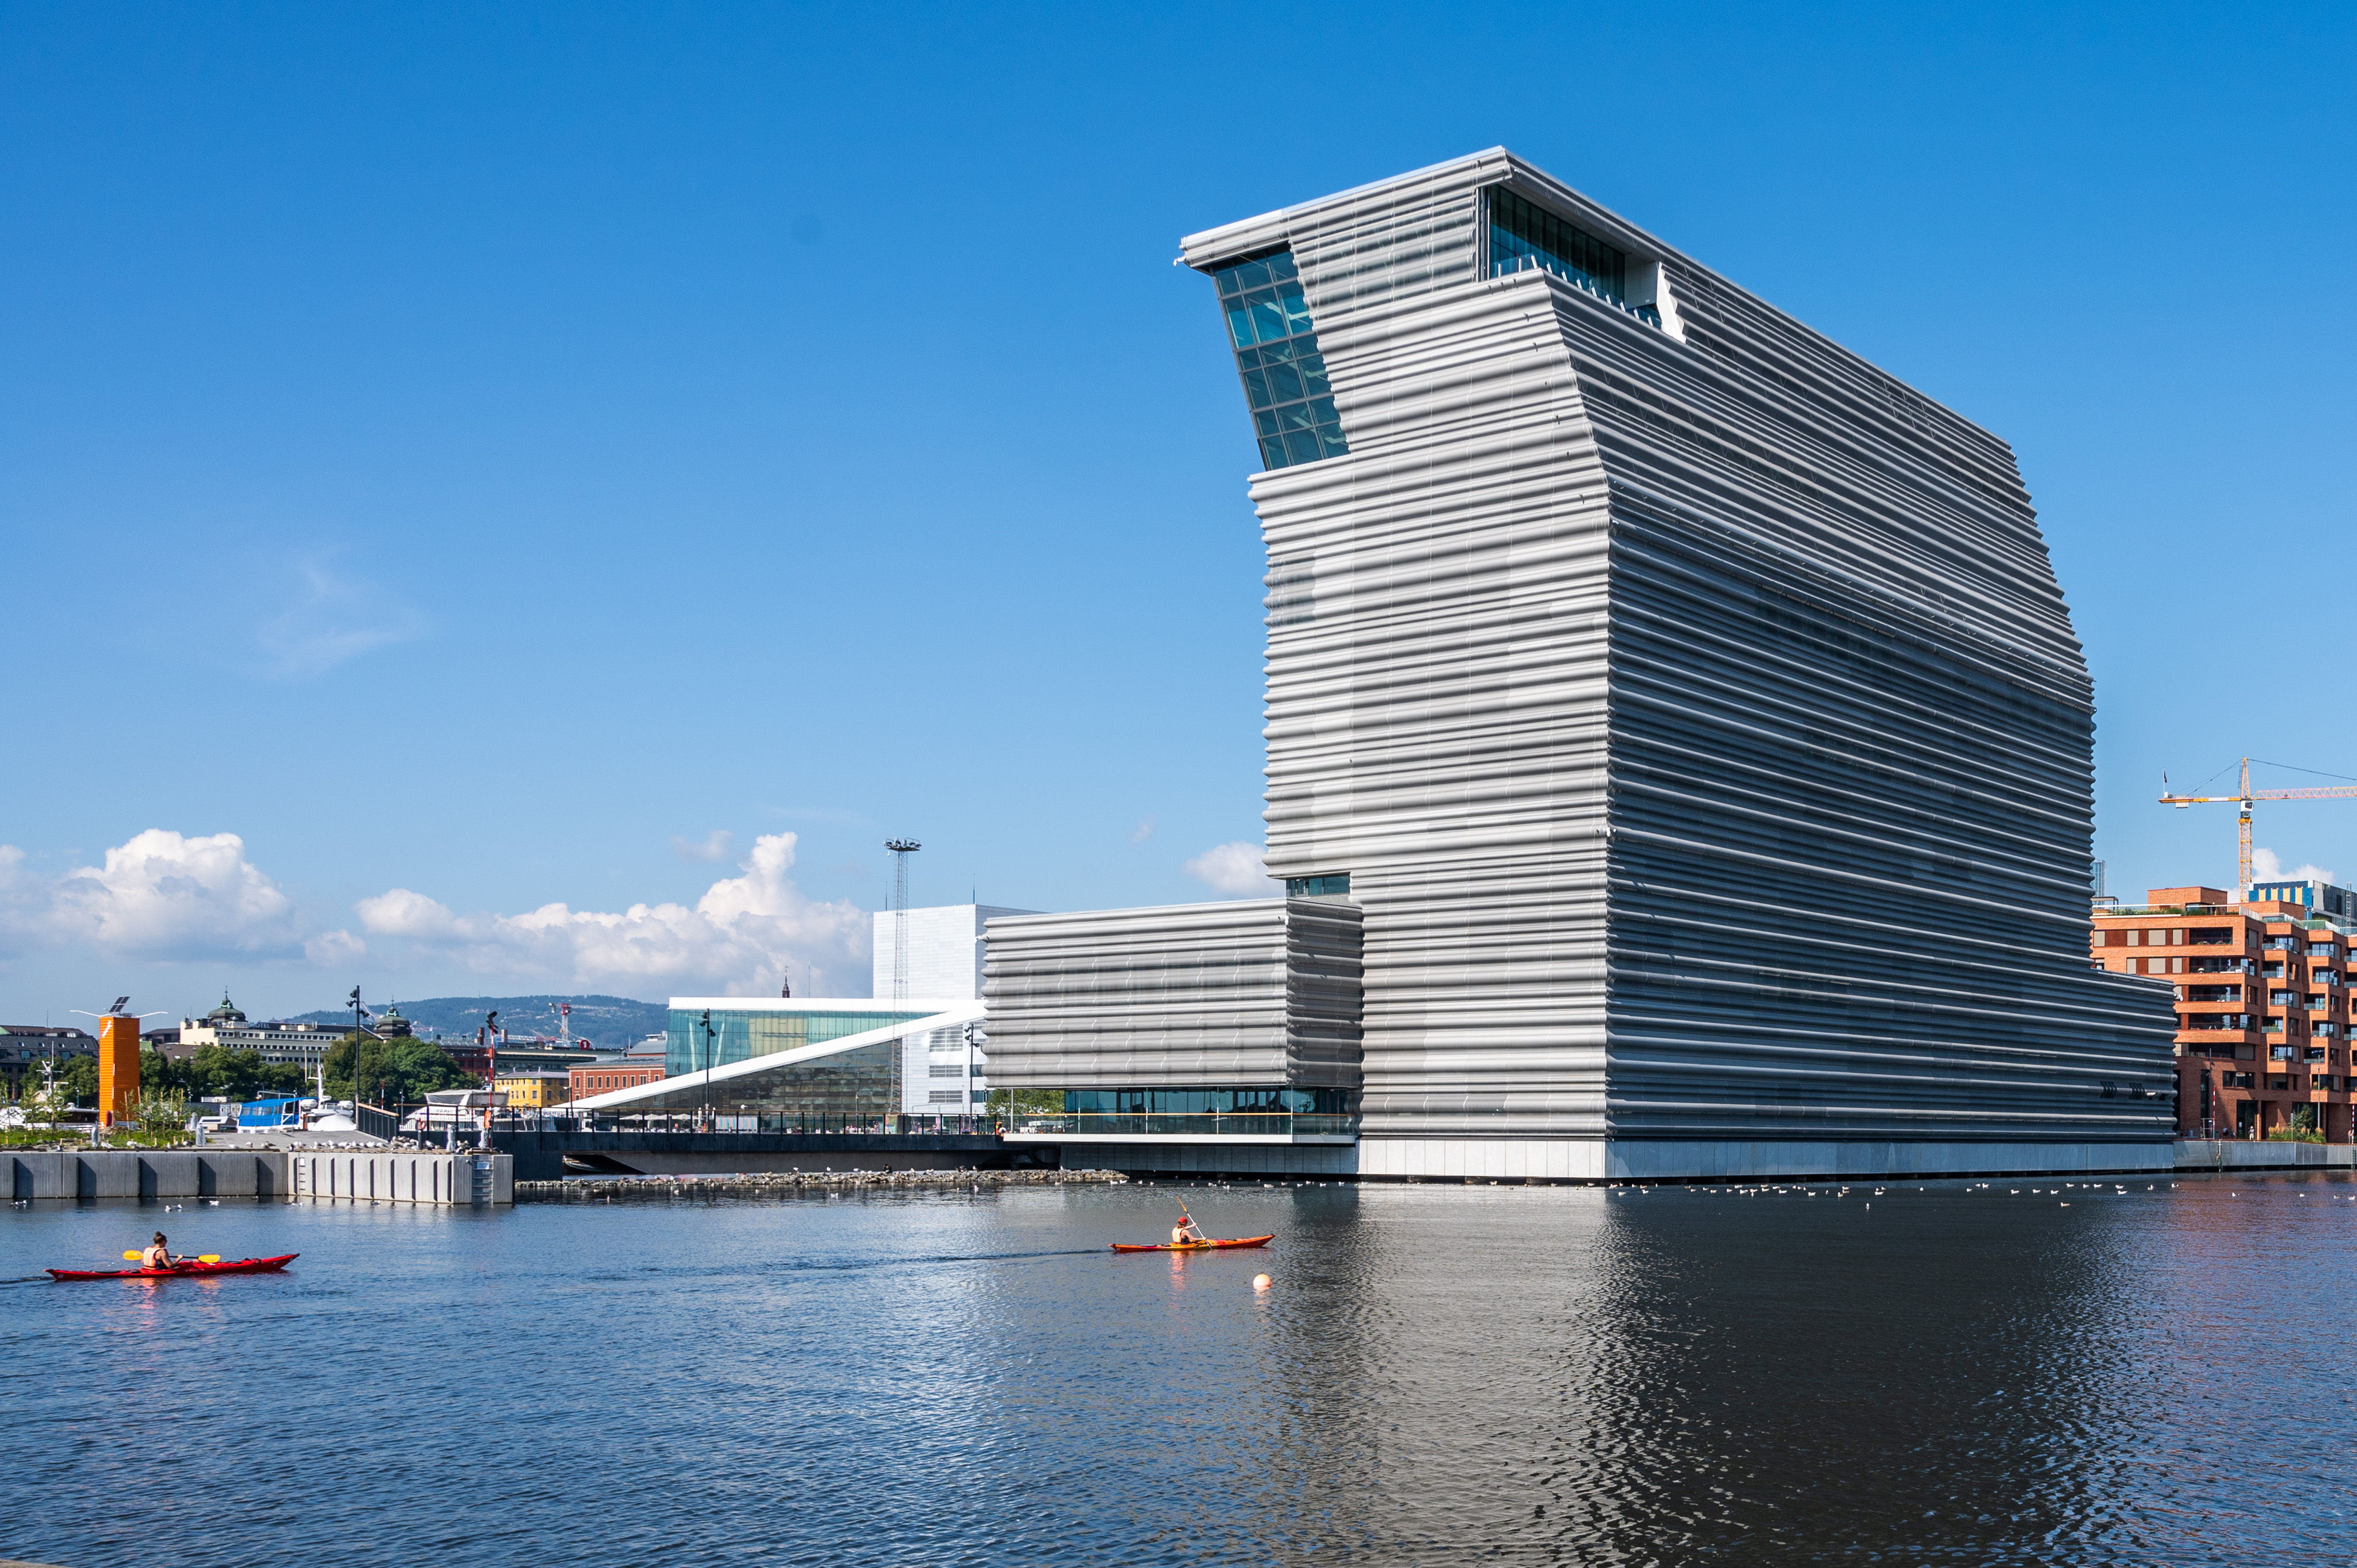 Norge: nytt Munch-museum åpner i Oslo